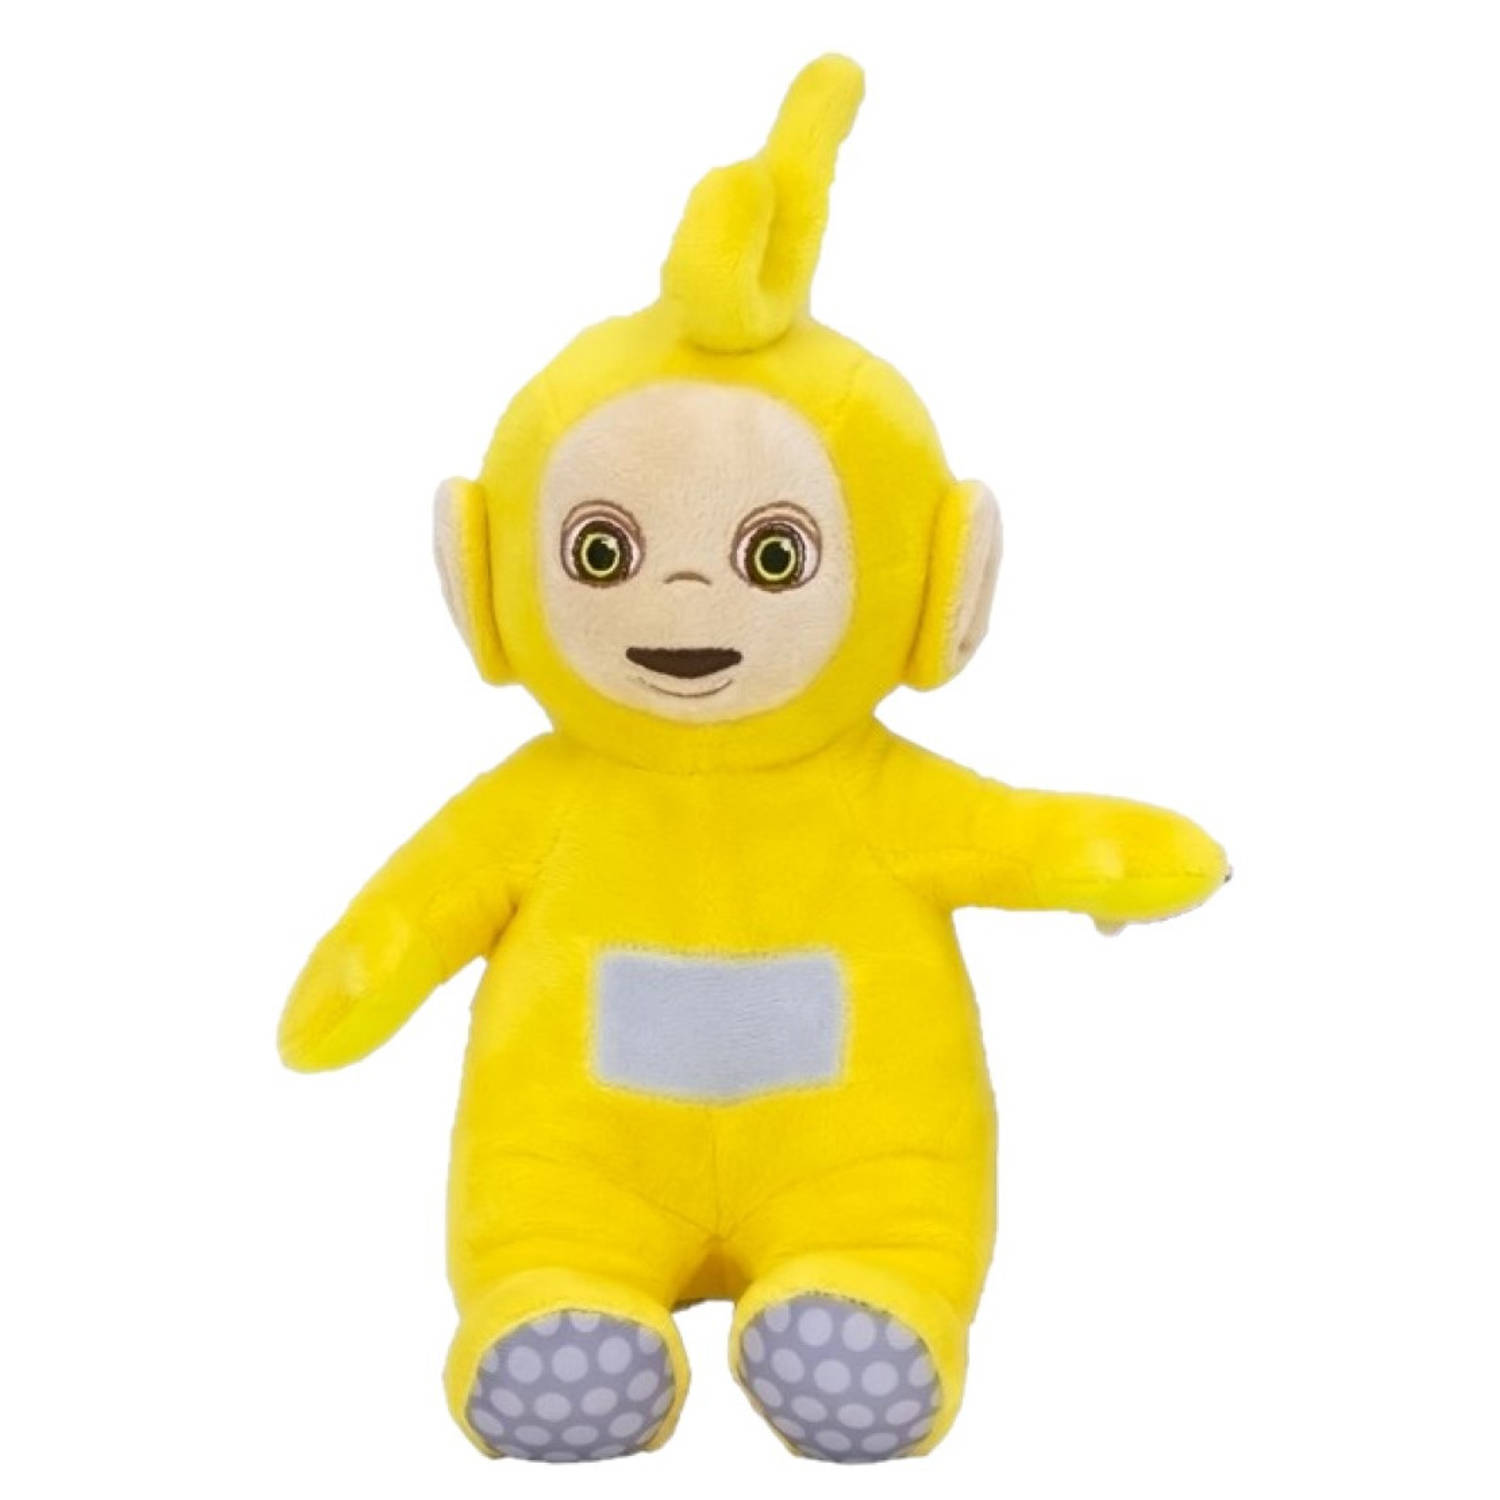 Pluche Teletubbies speelgoed knuffel Laa Laa geel 36 cm - Knuffelpop